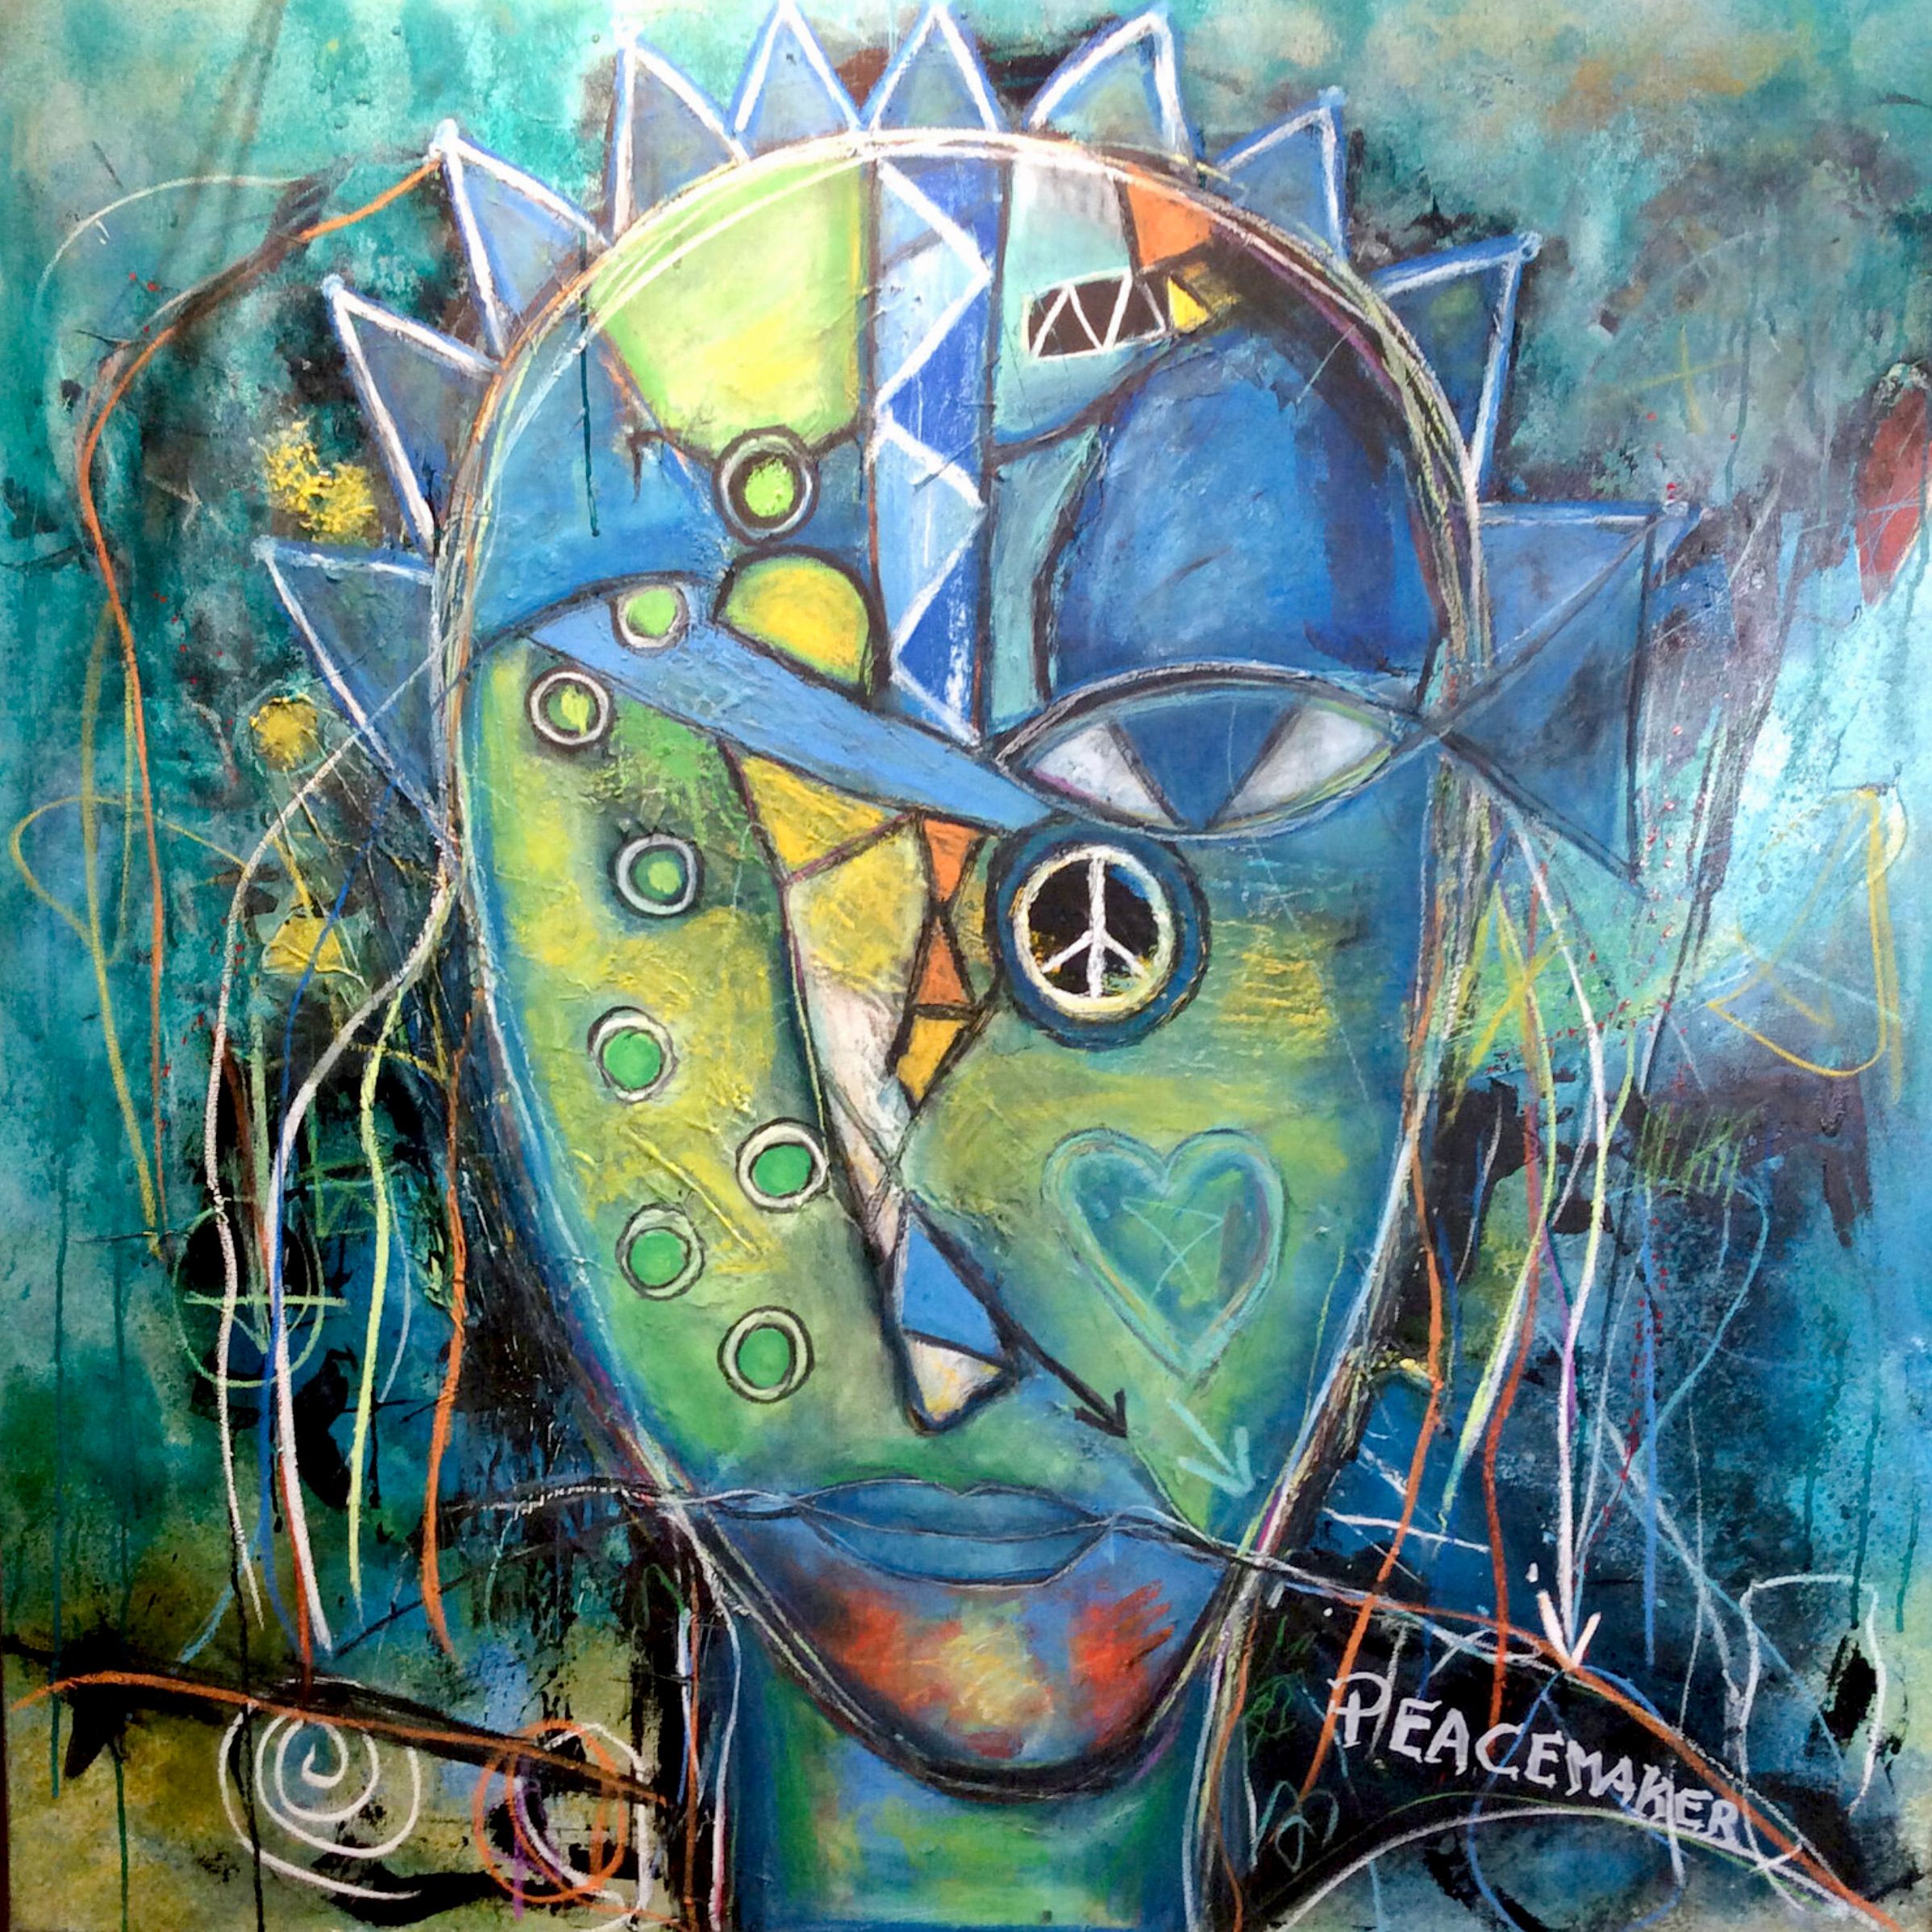 El retrato expresionista "El pacificador... en busca de un nuevo trabajo", de Ilona Schmidt, muestra a un pacificador en busca de estabilidad y seguridad. La paleta de colores del cuadro consiste en diferentes tonos de azul, amarillo y verde que se mezclan armoniosamente. El azul representa la paz y la estabilidad que busca el pacificador, mientras que el amarillo simboliza la esperanza y la dirección positiva de su misión..... El verde representa la naturaleza y transmite una sensación de crecimiento y desarrollo.